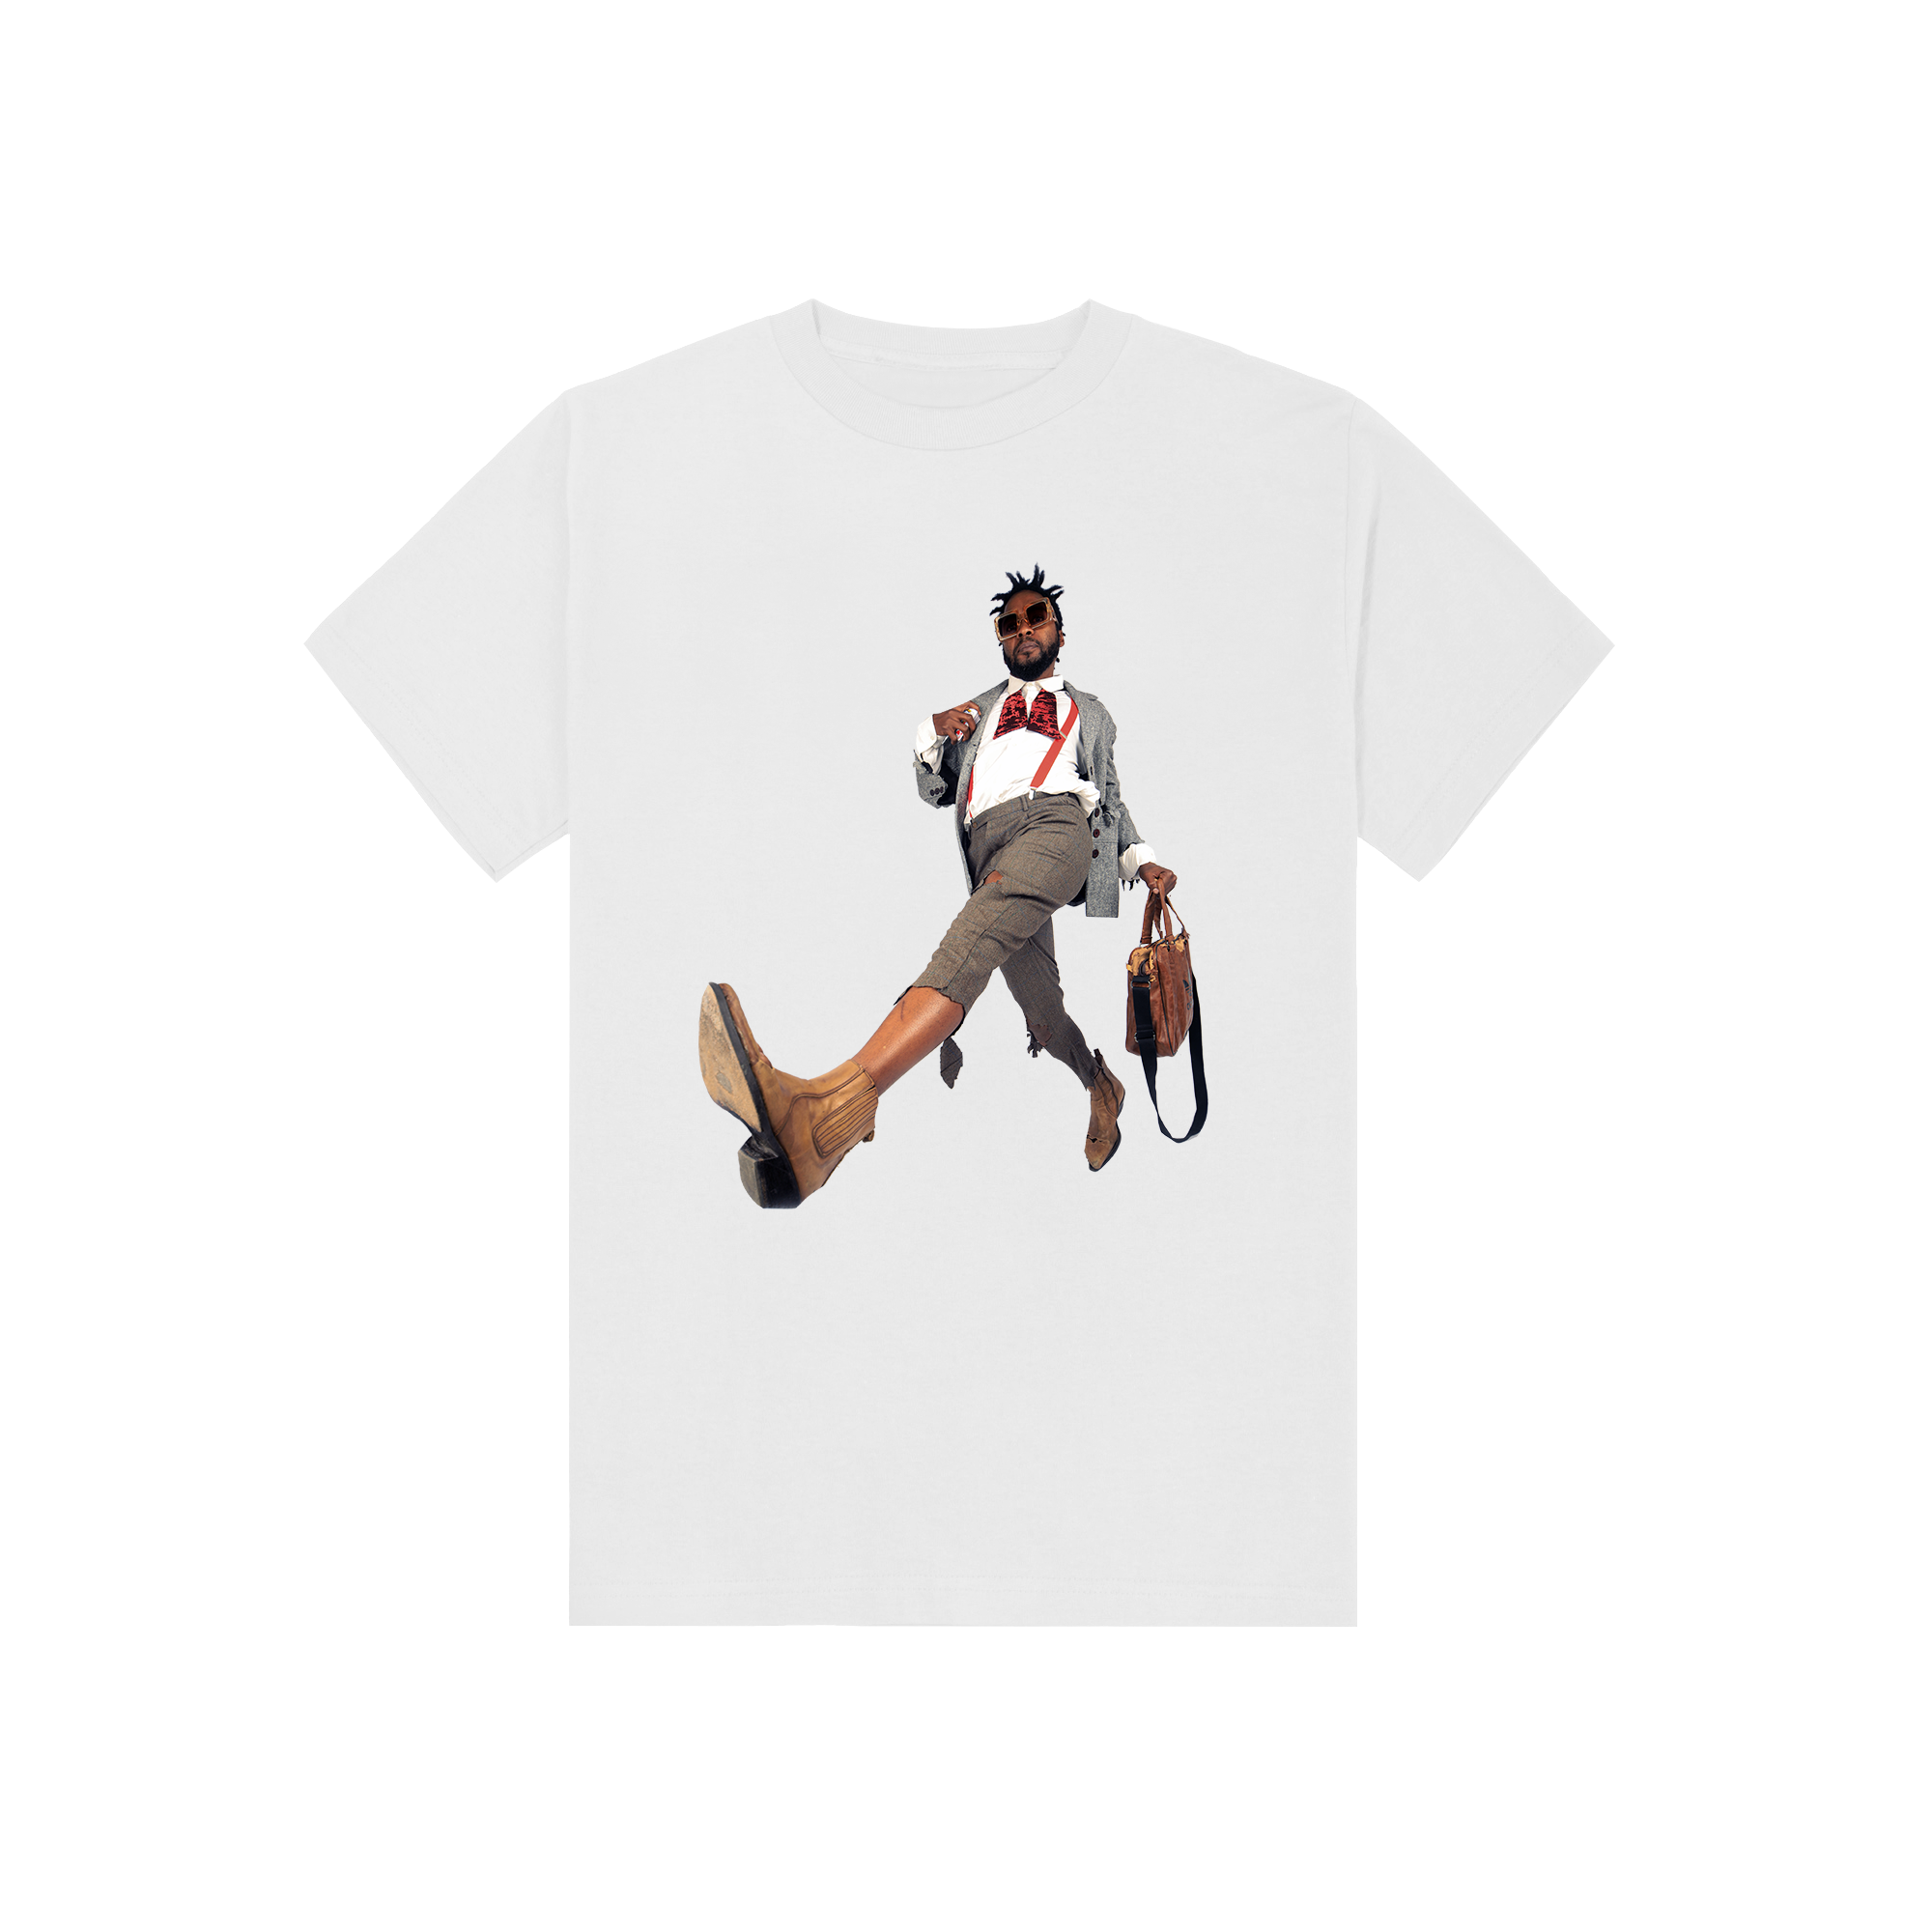 Limited iFani 'La Walk' T-shirt (Preorder)